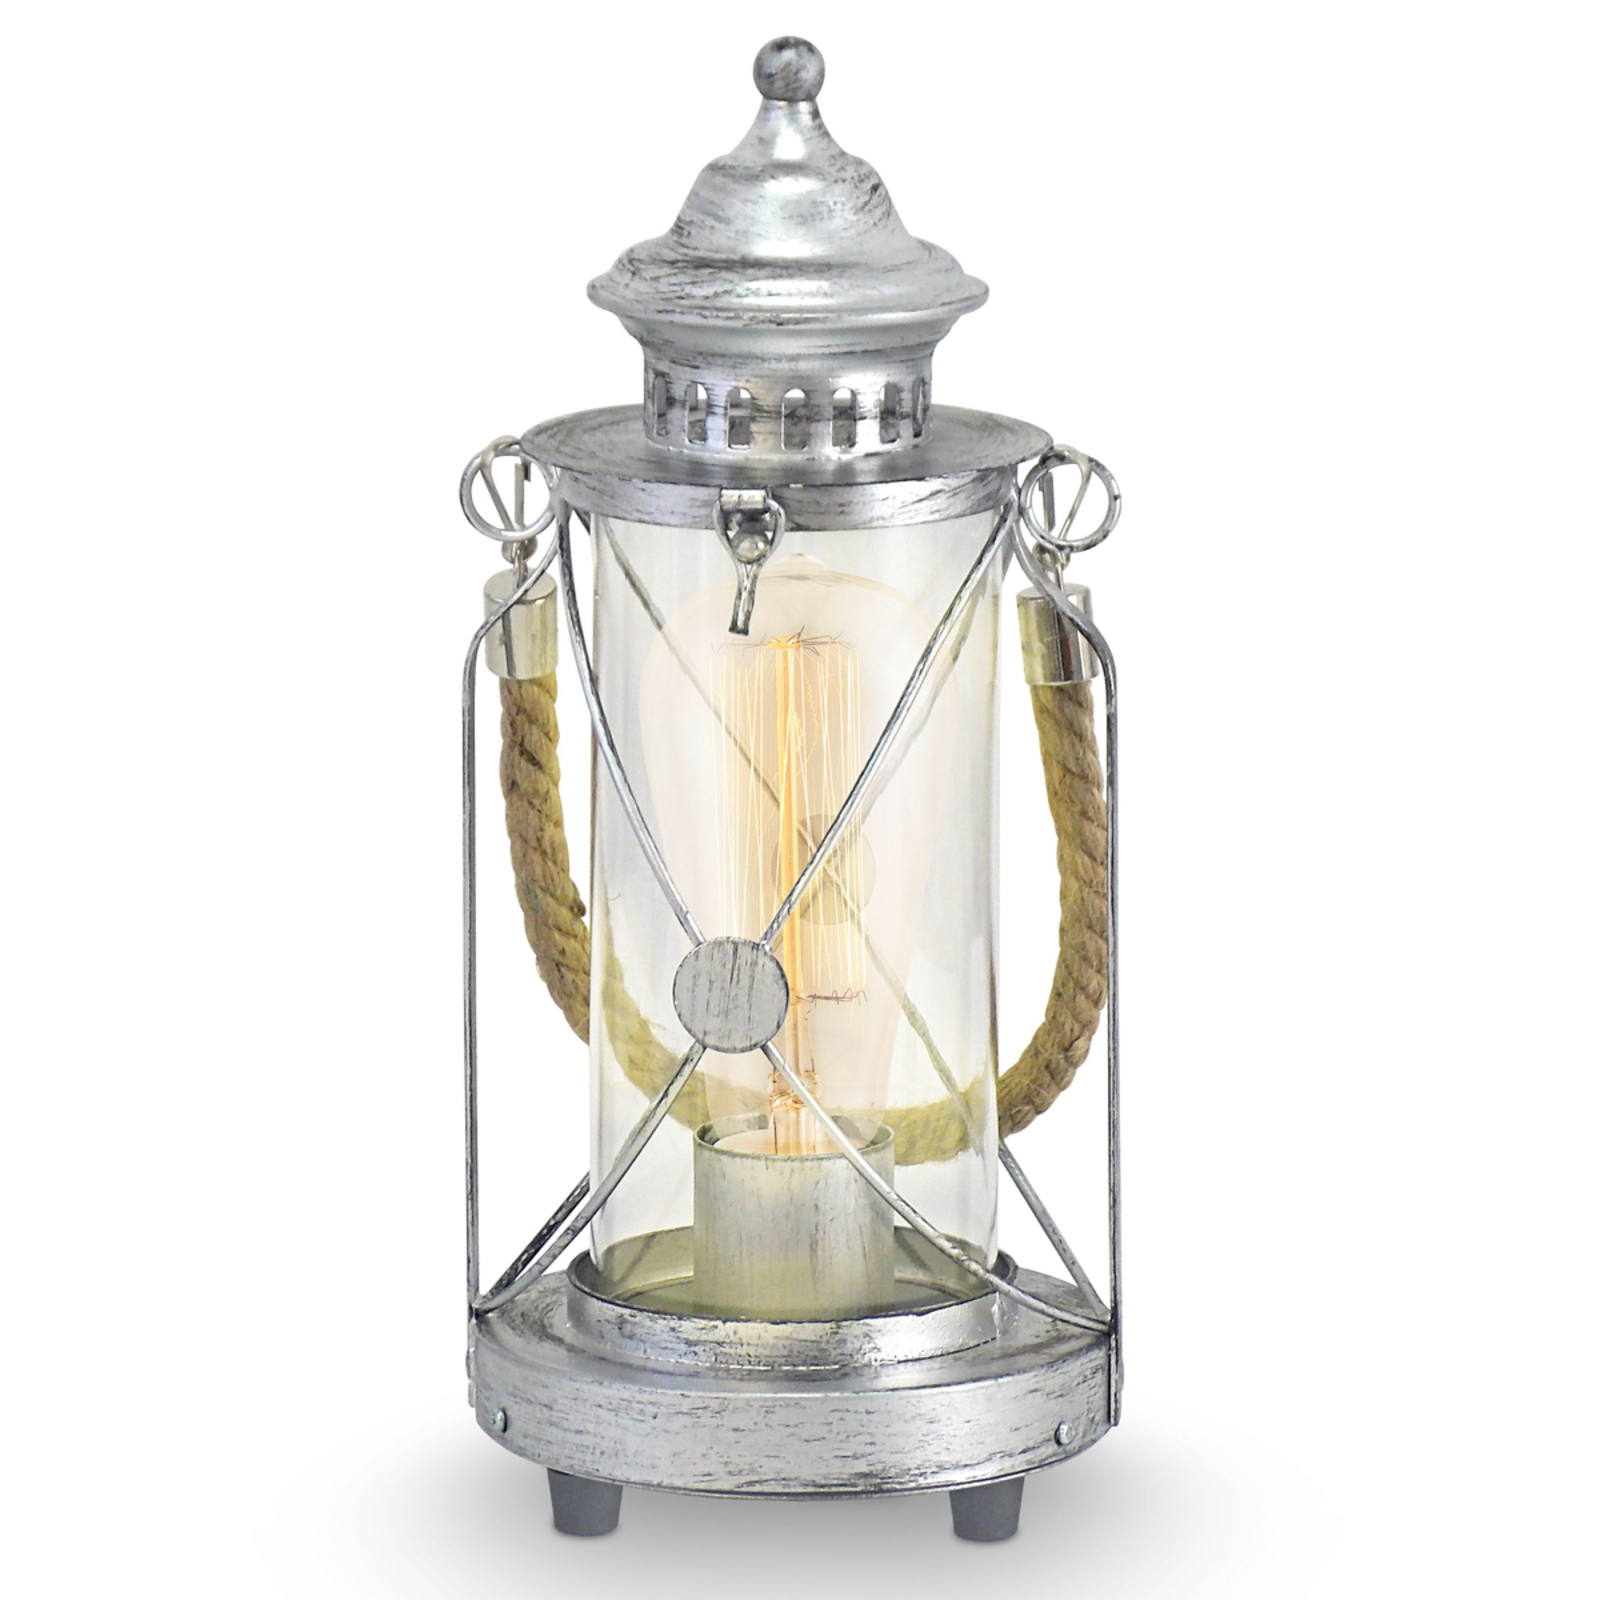 Světlá stolní lampa Kirian lucerna stříbrná-antika